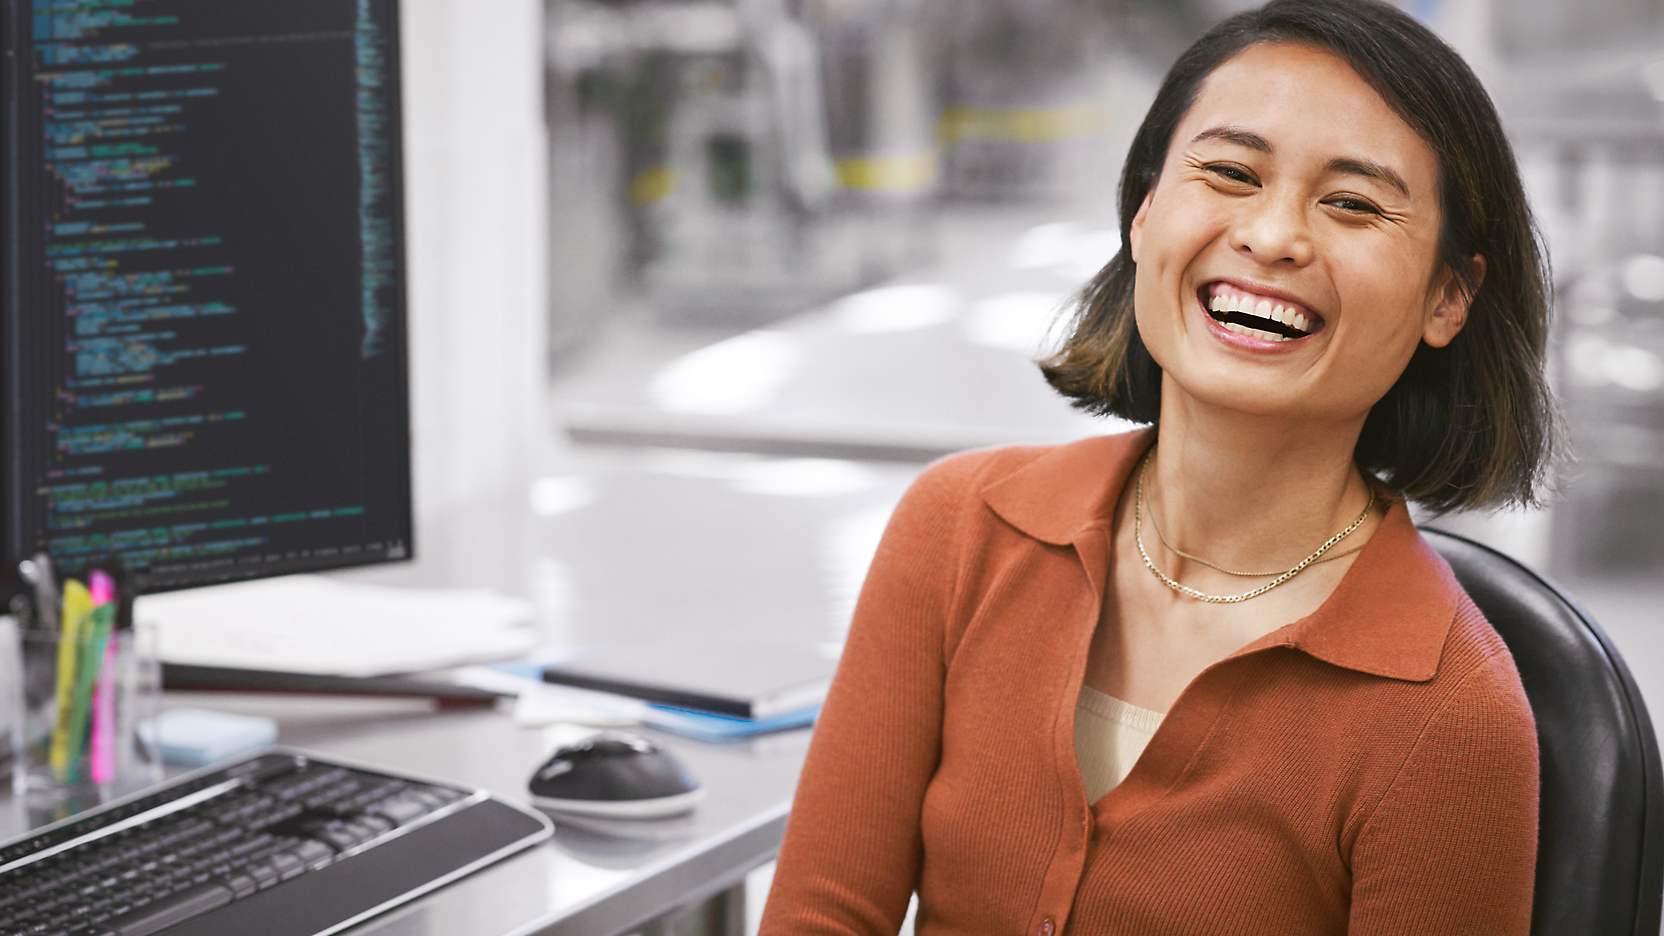 Uma mulher alegre sentada em uma mesa com um computador, exibindo código na tela, em um ambiente de escritório moderno.